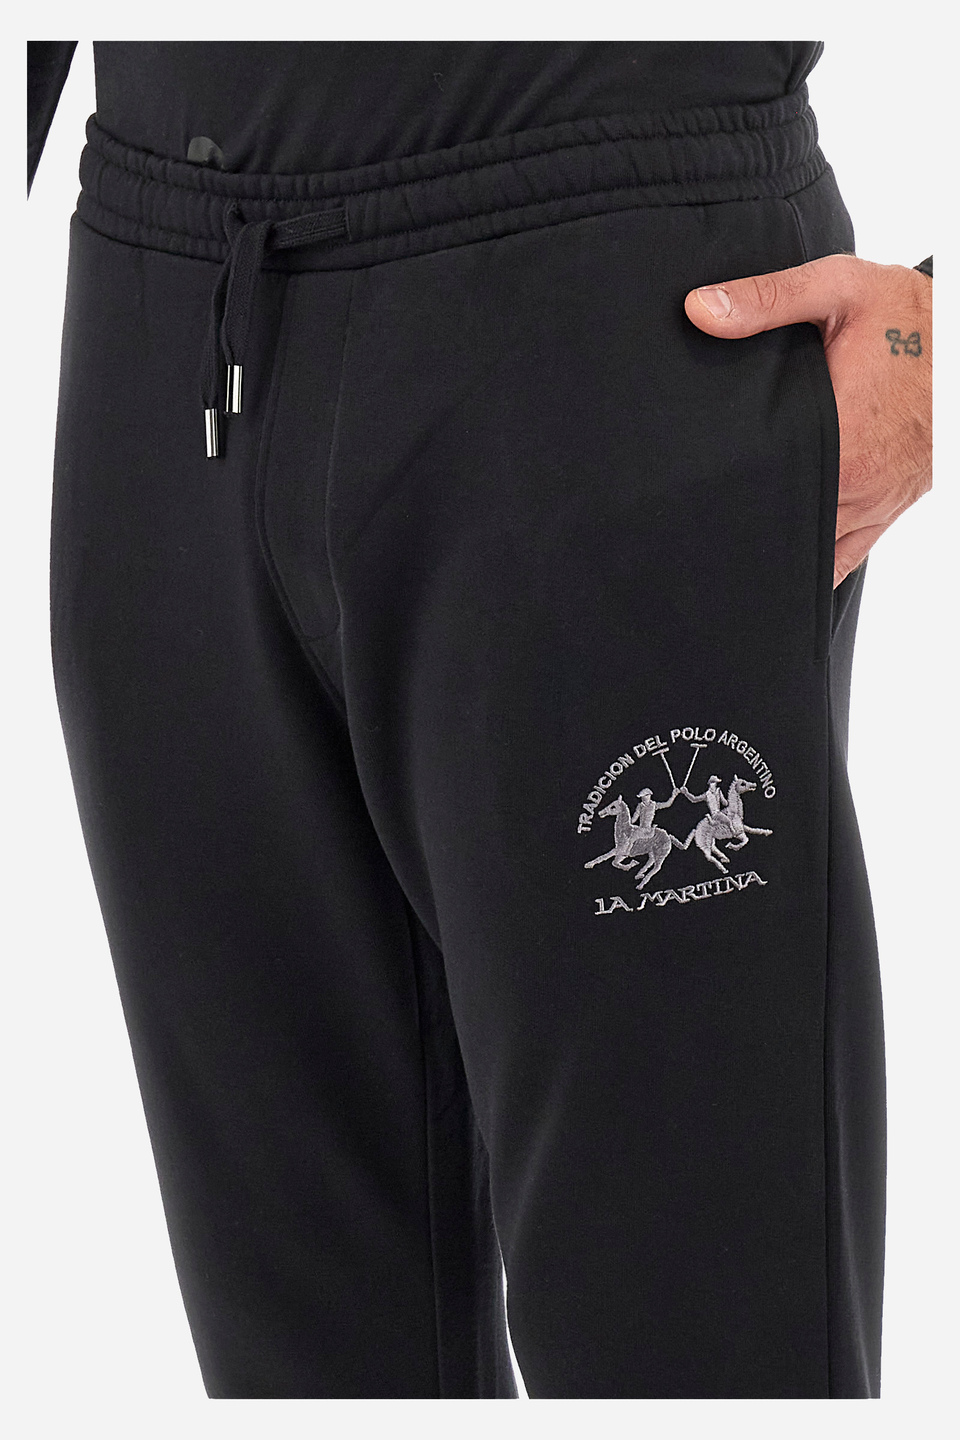 Pantalon de jogging homme coupe classique - Wallas | La Martina - Official Online Shop